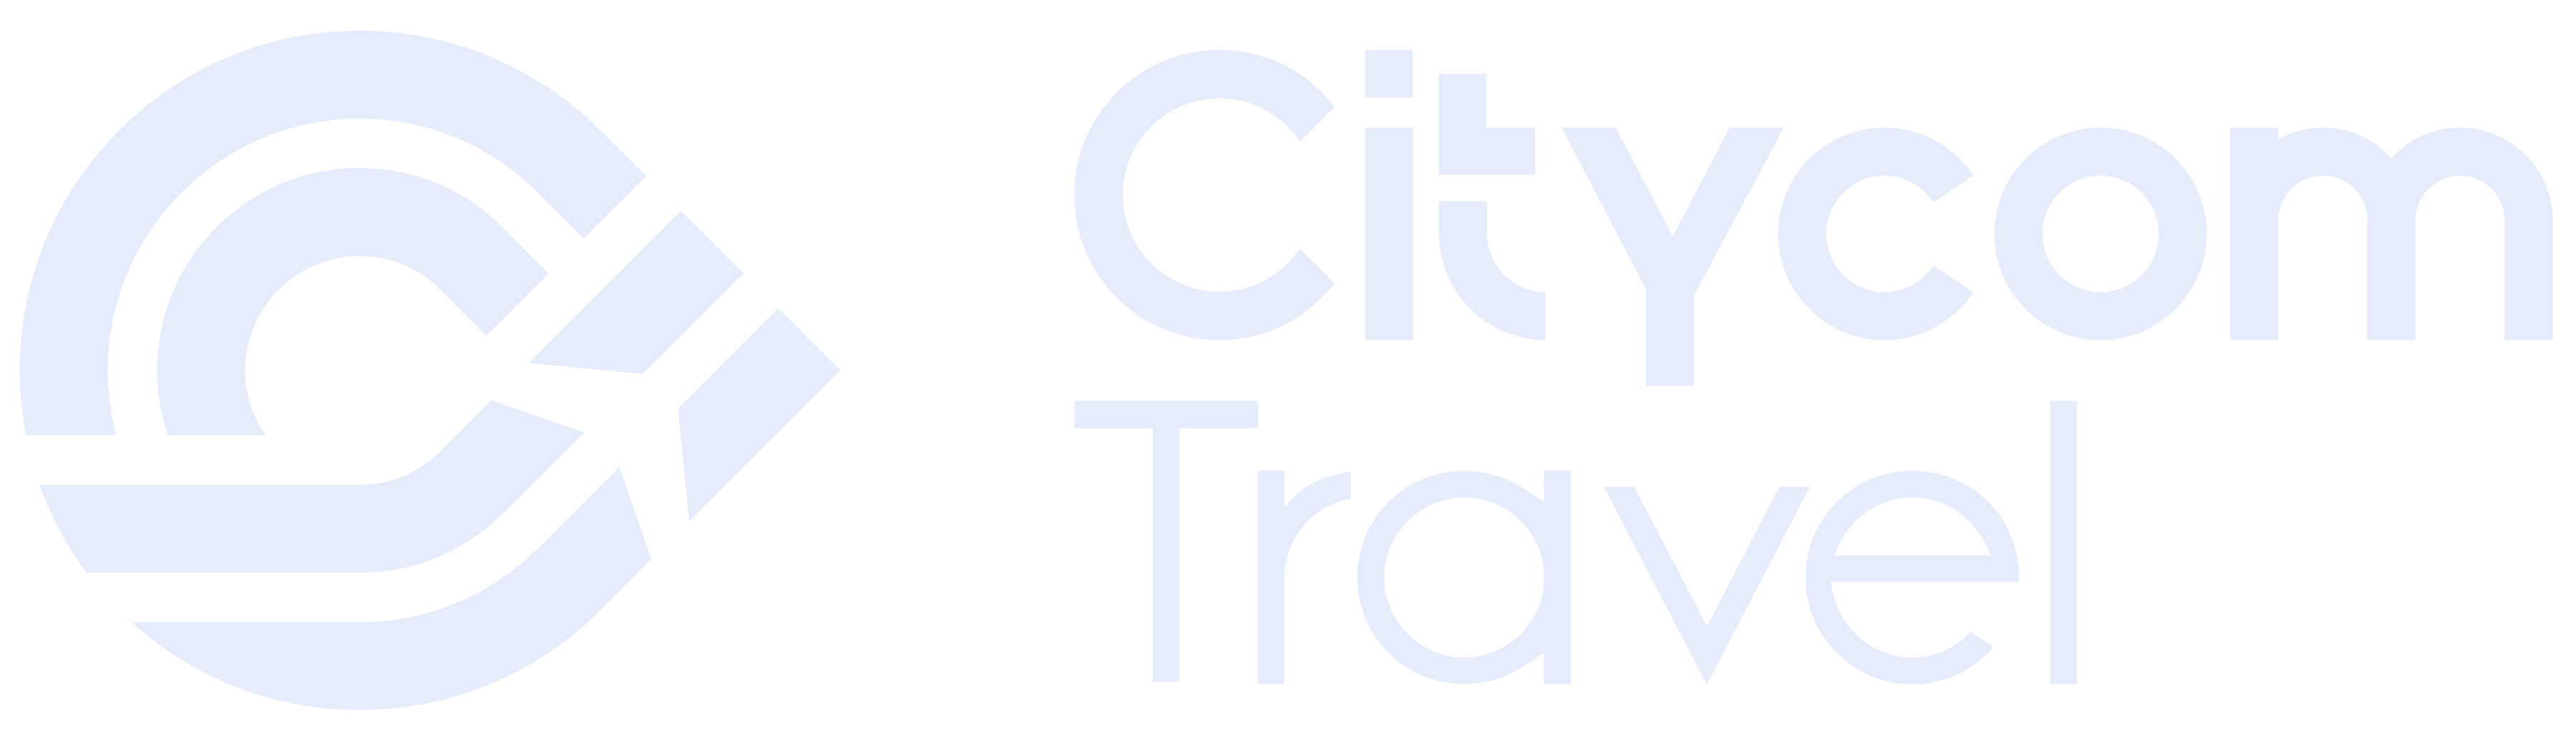 Citycom Travel Logo White